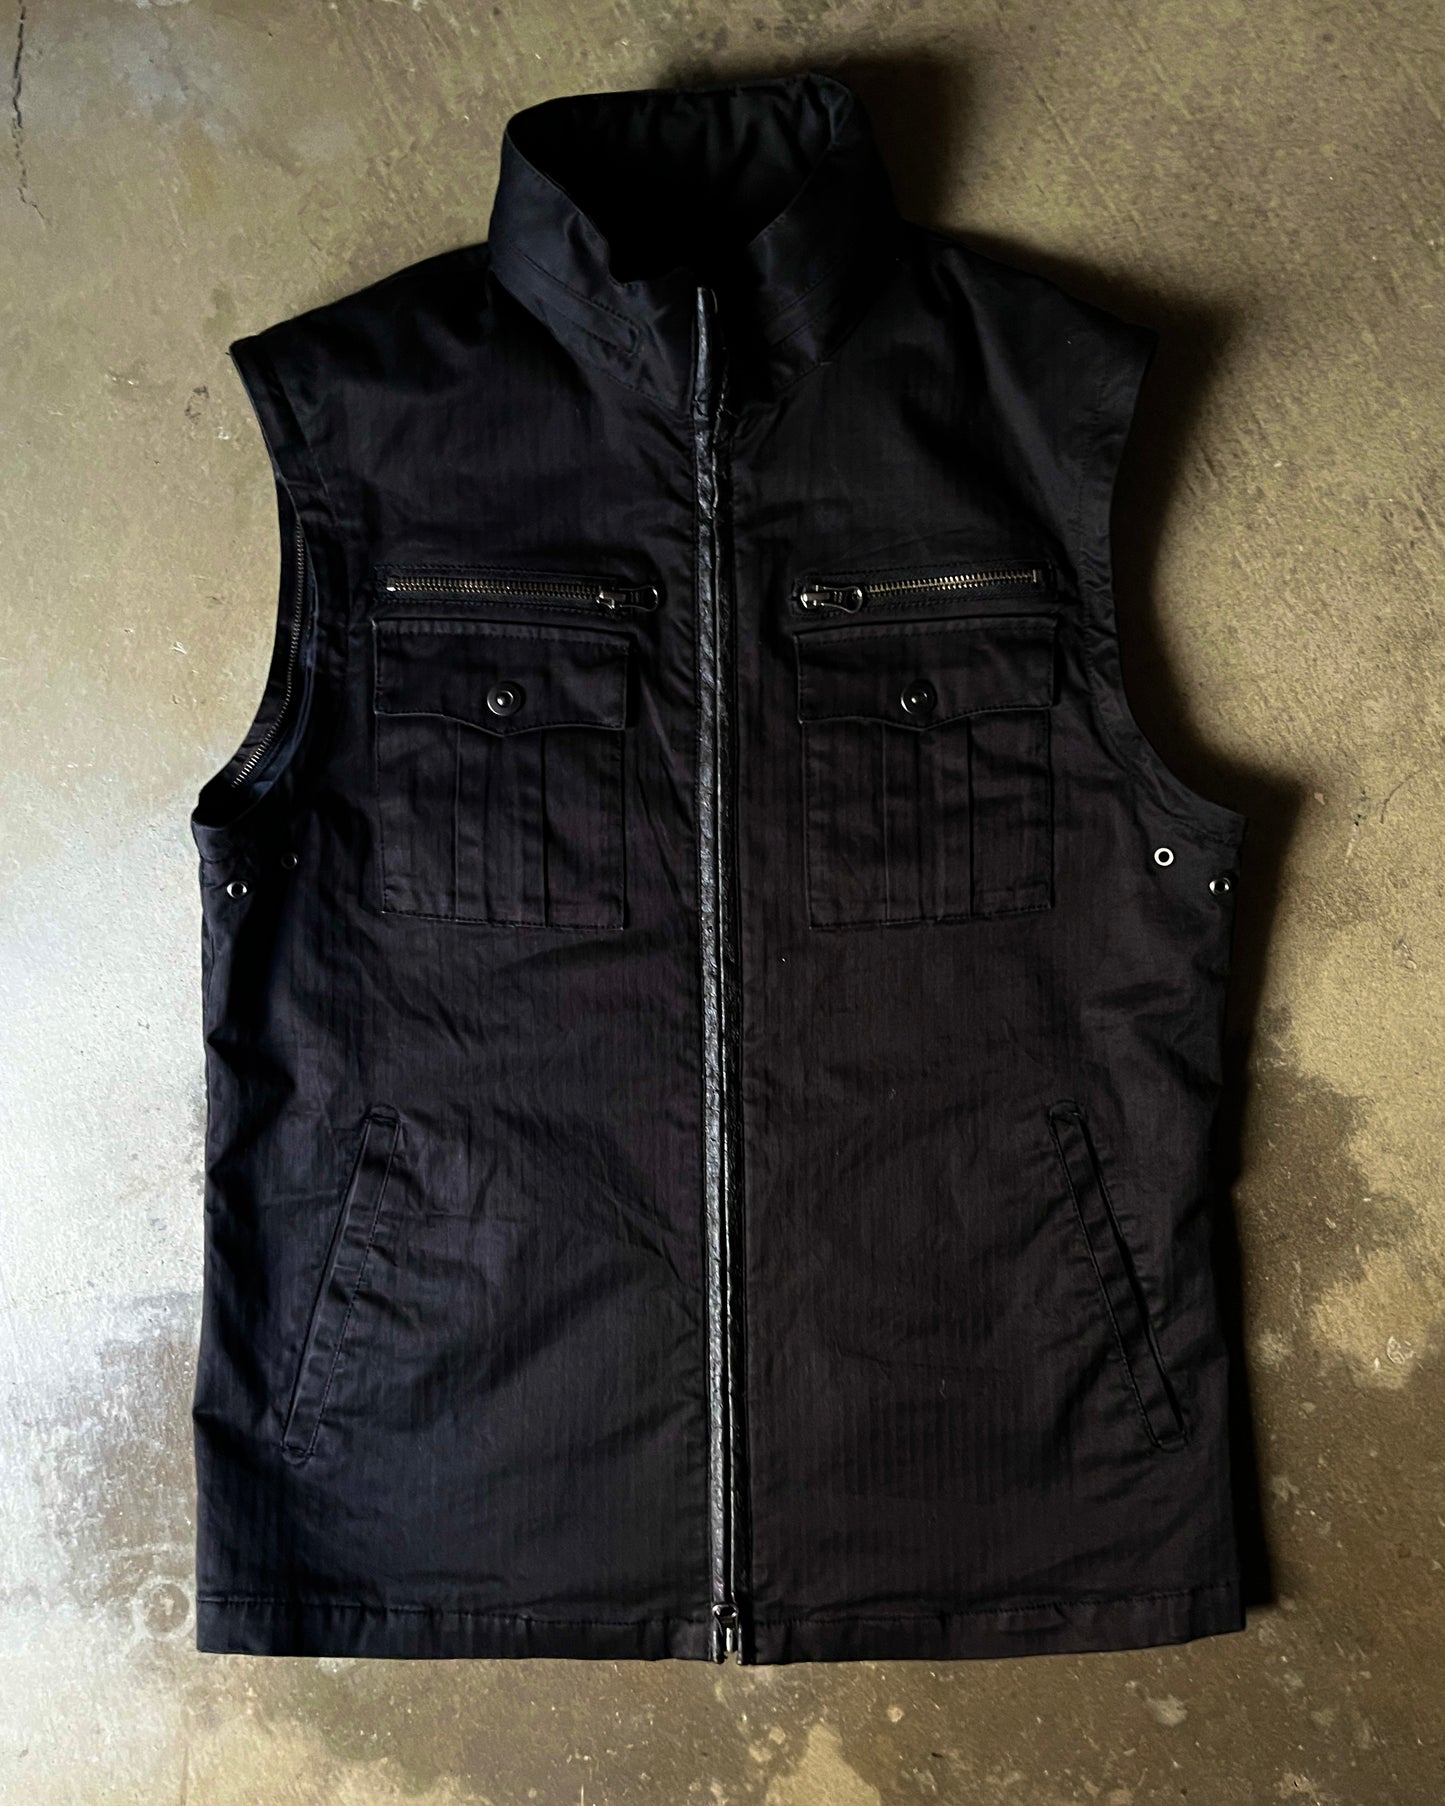 PPFM Removable Sleeve Double-Zip Jacket Vest